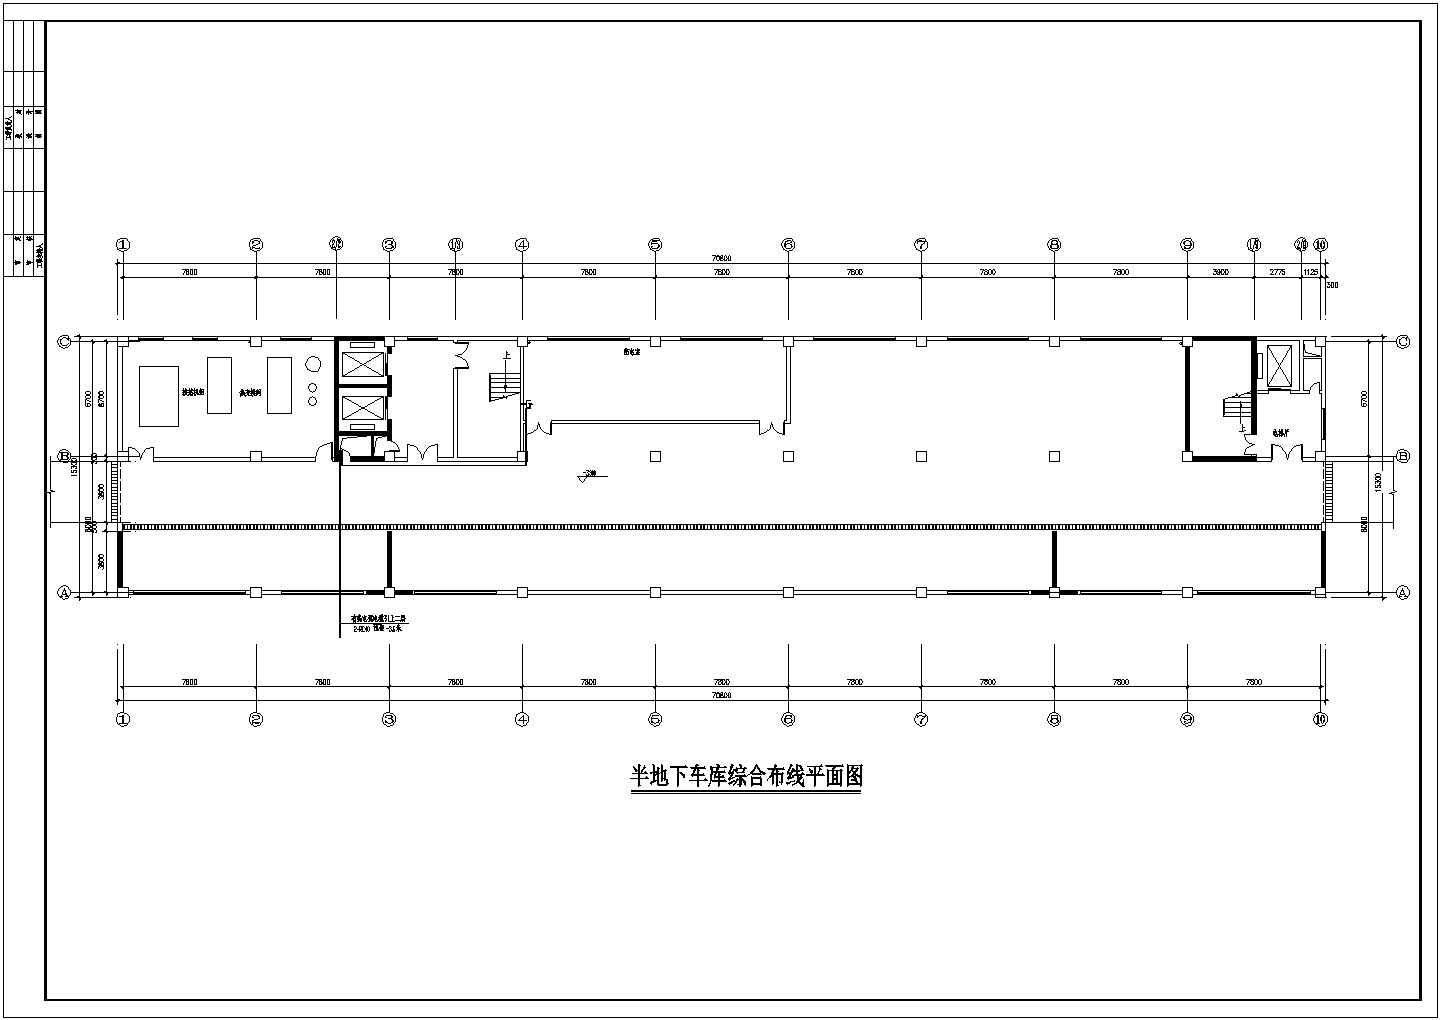 全套医院综合楼建筑电气工程设计图纸-03